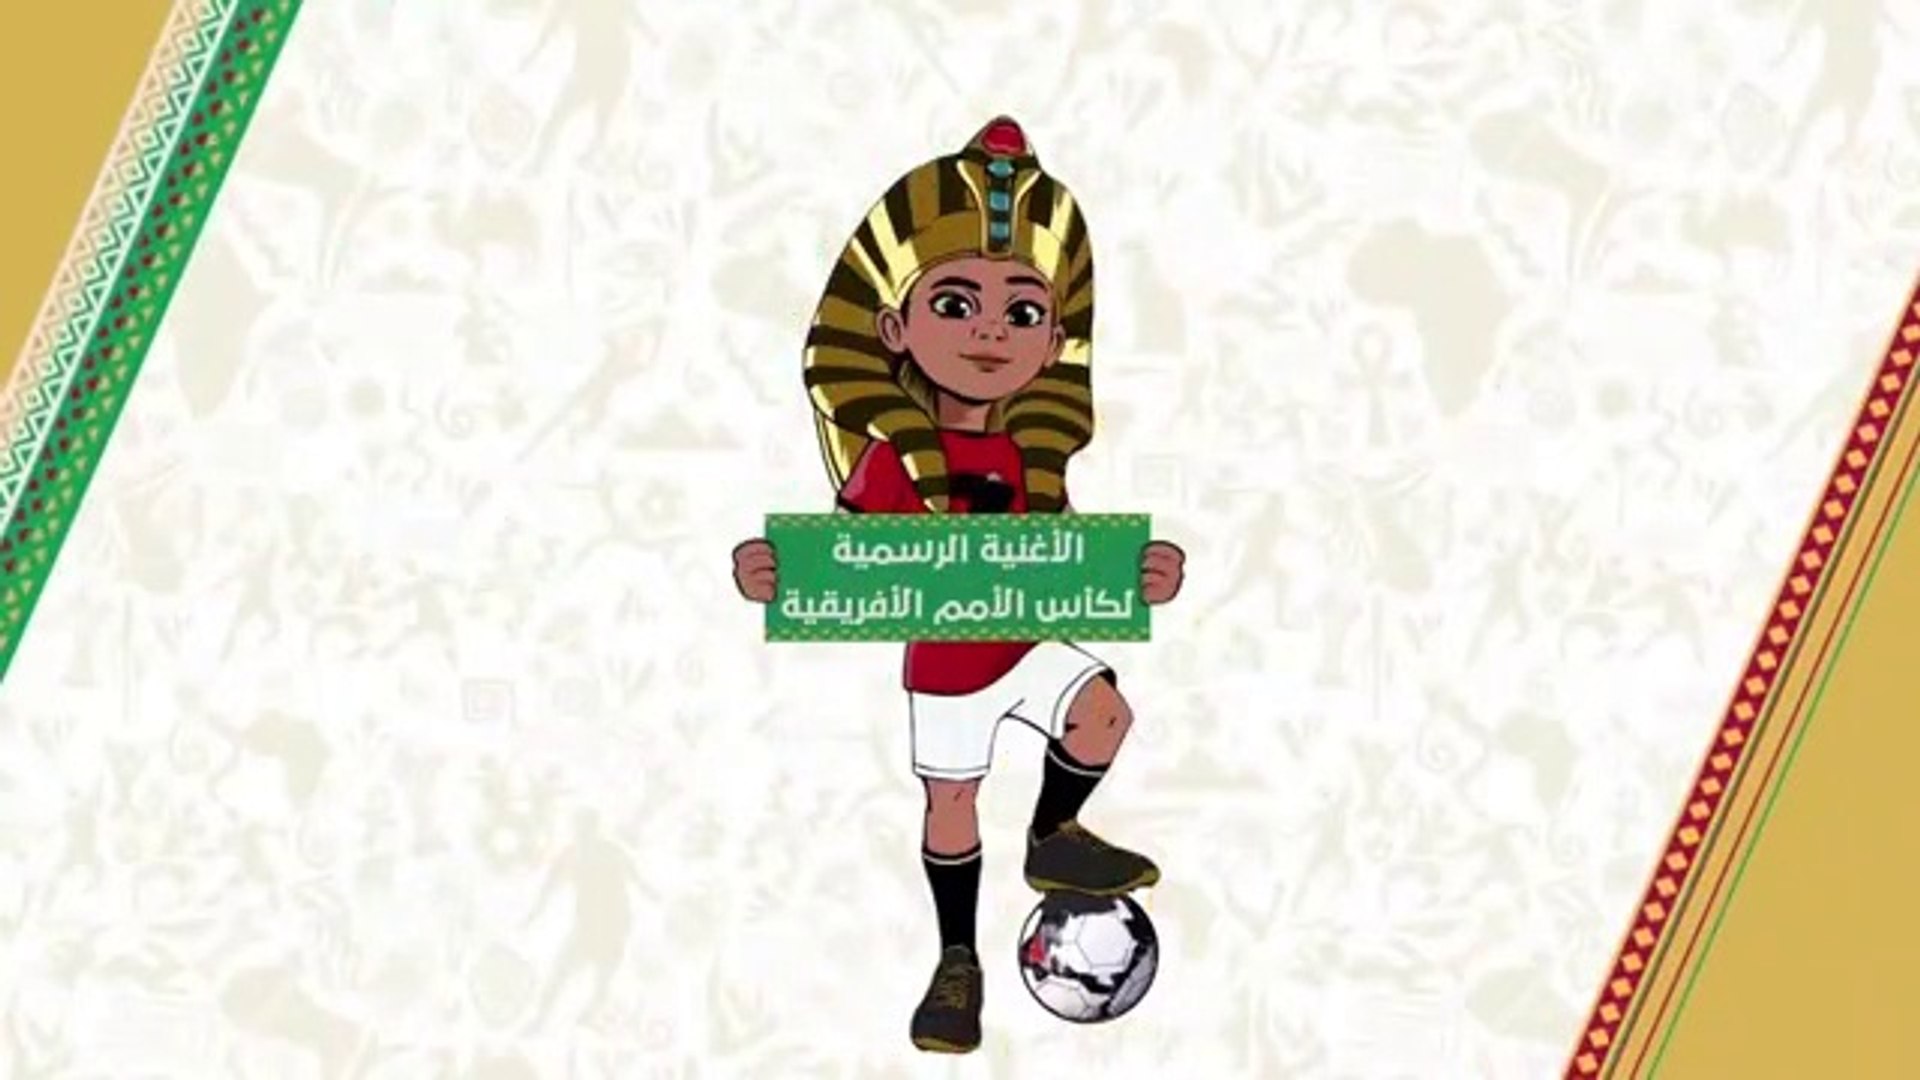 Chanson Can 2019 Egypt الأغنية الرسمية لكأس الأمم الإفريقية 2019